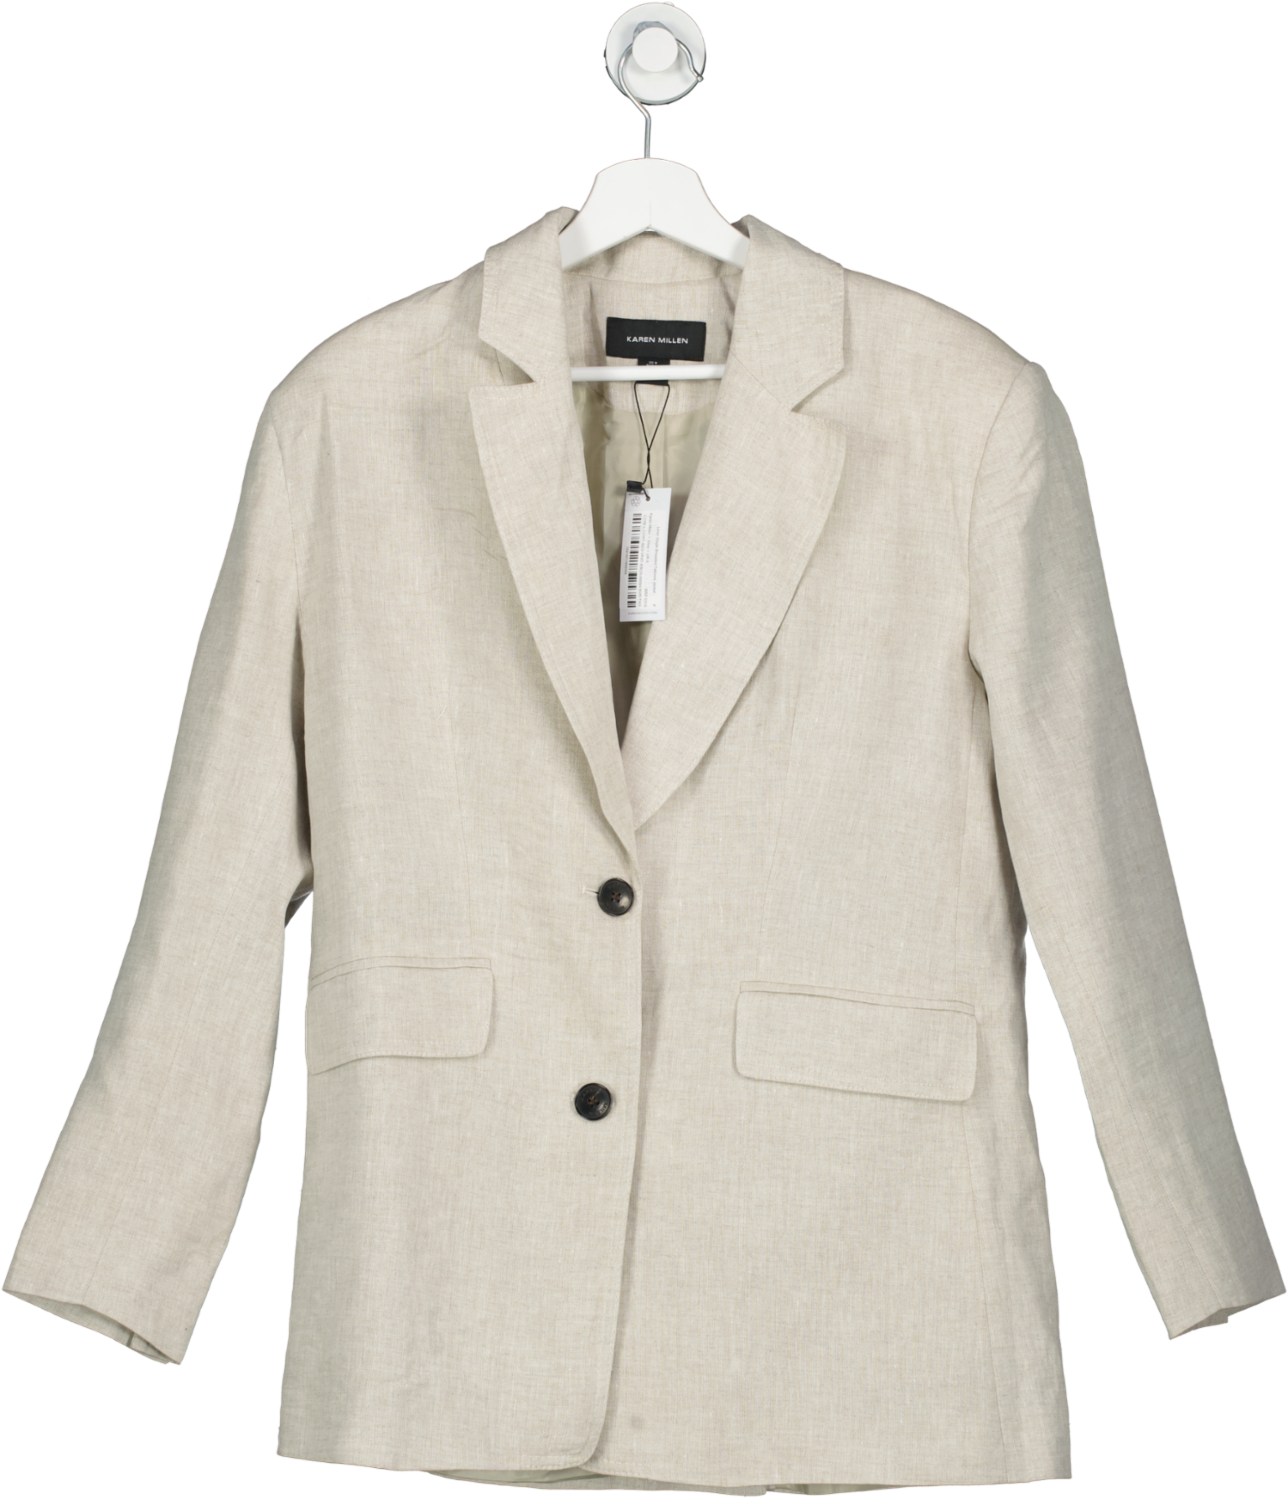 Karen Millen Grey Linen Single Breasted Tailored Jacket UK 8